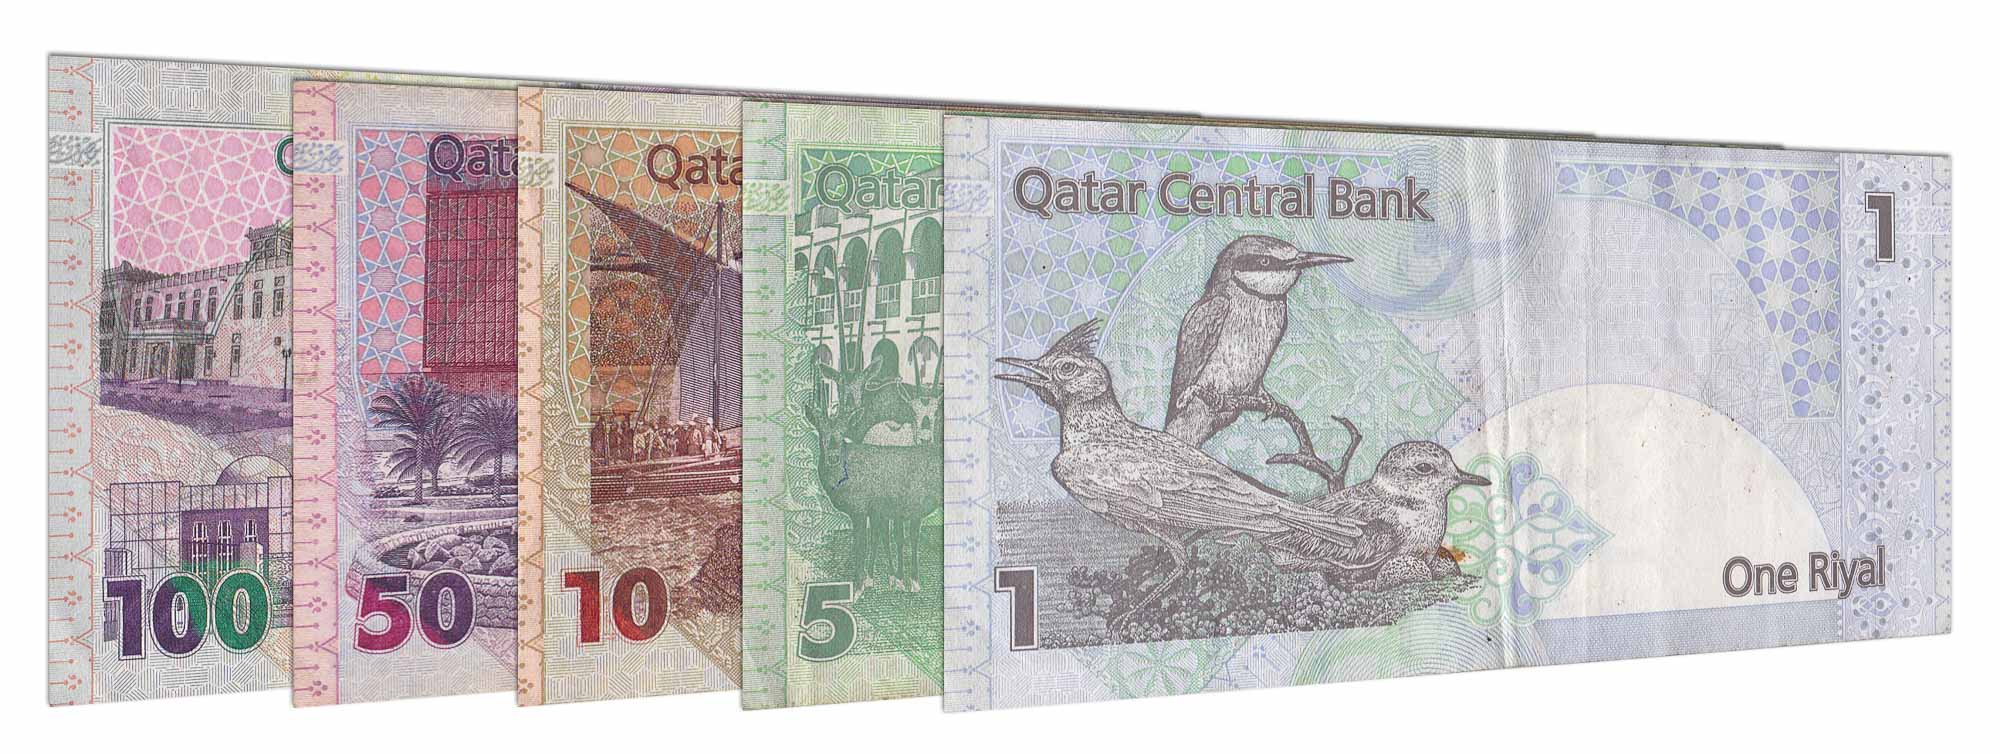 Forex Trading Qatar